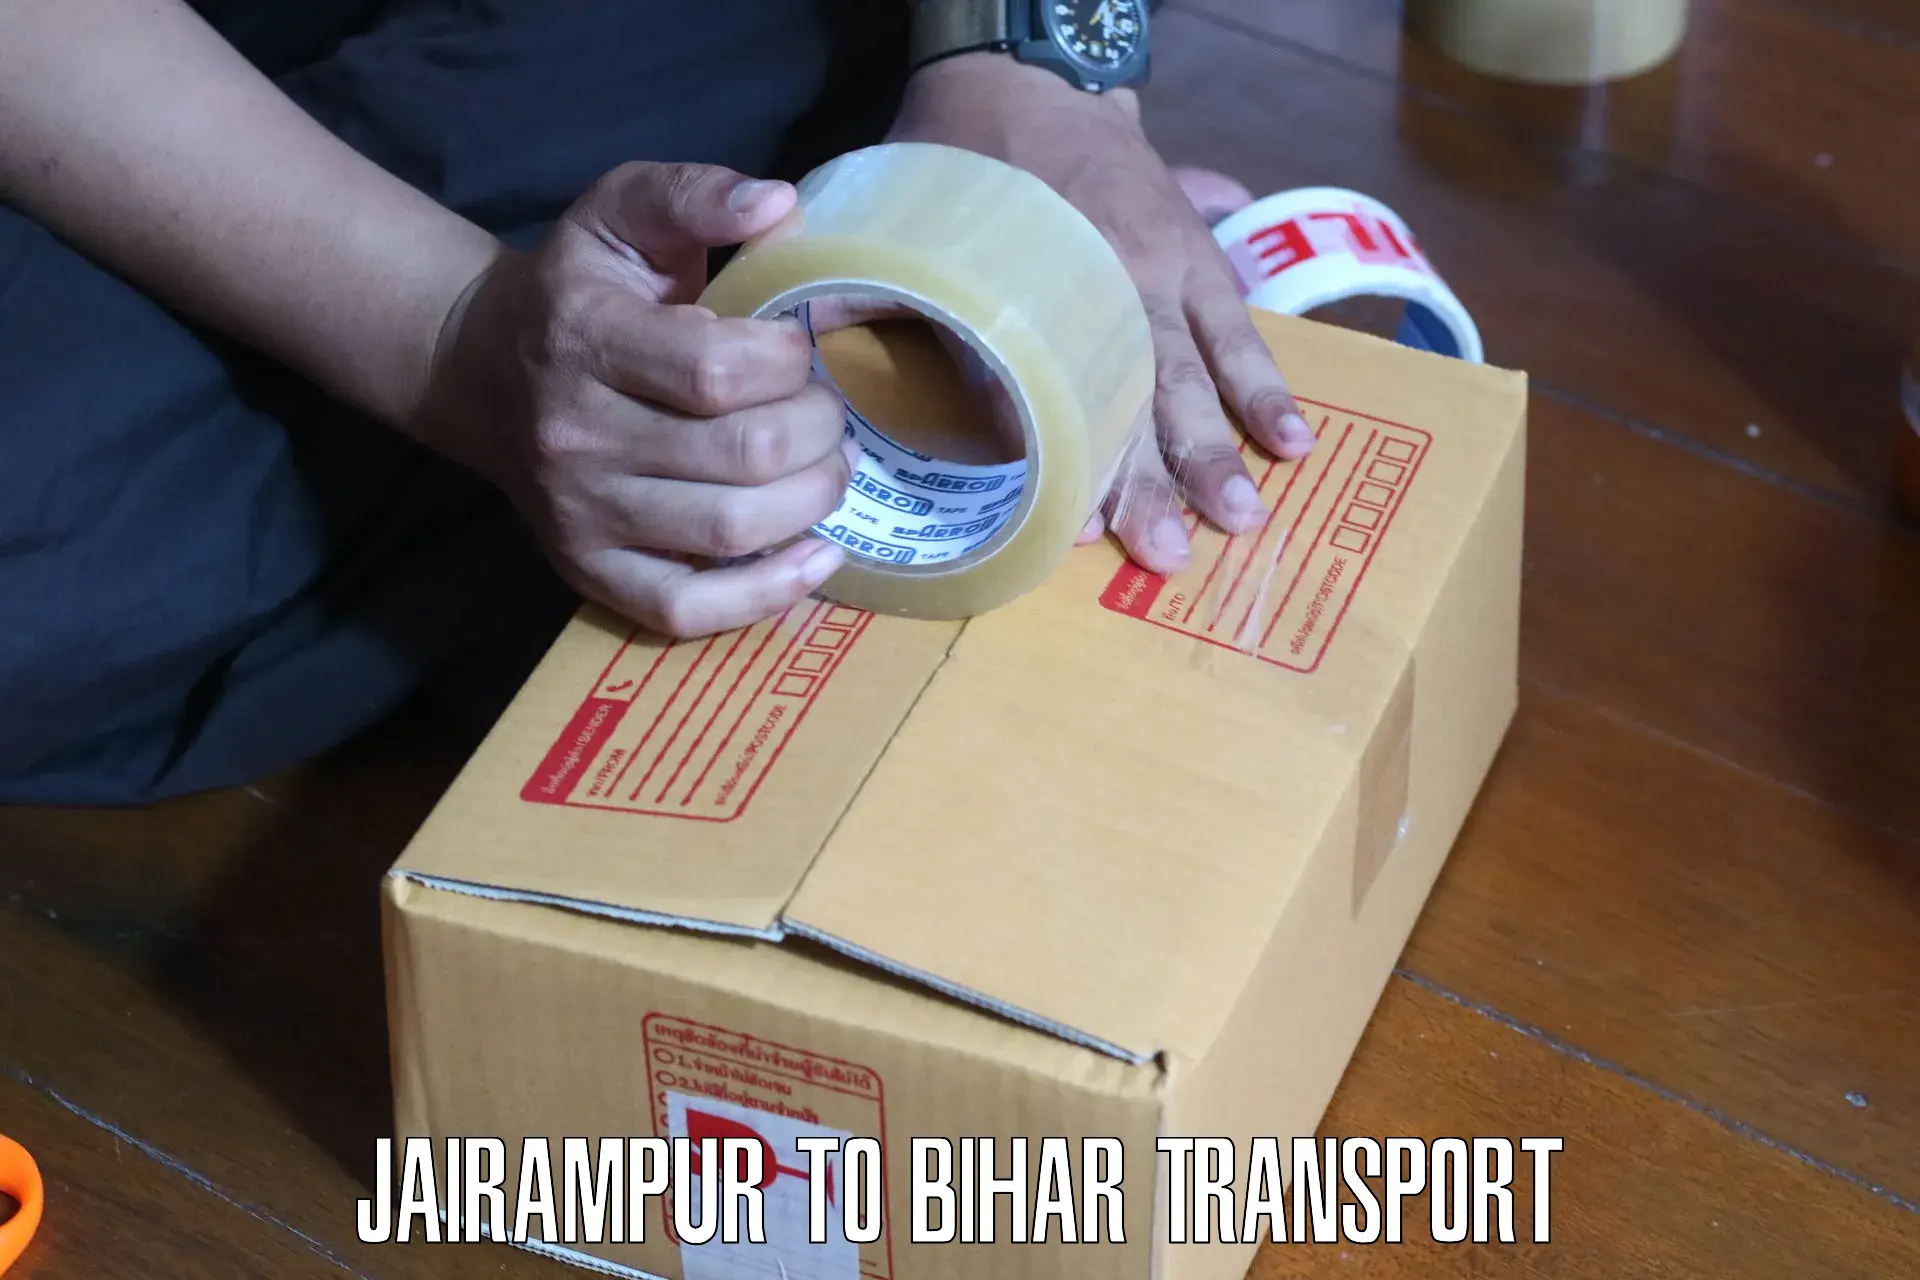 Shipping partner Jairampur to Darbhanga